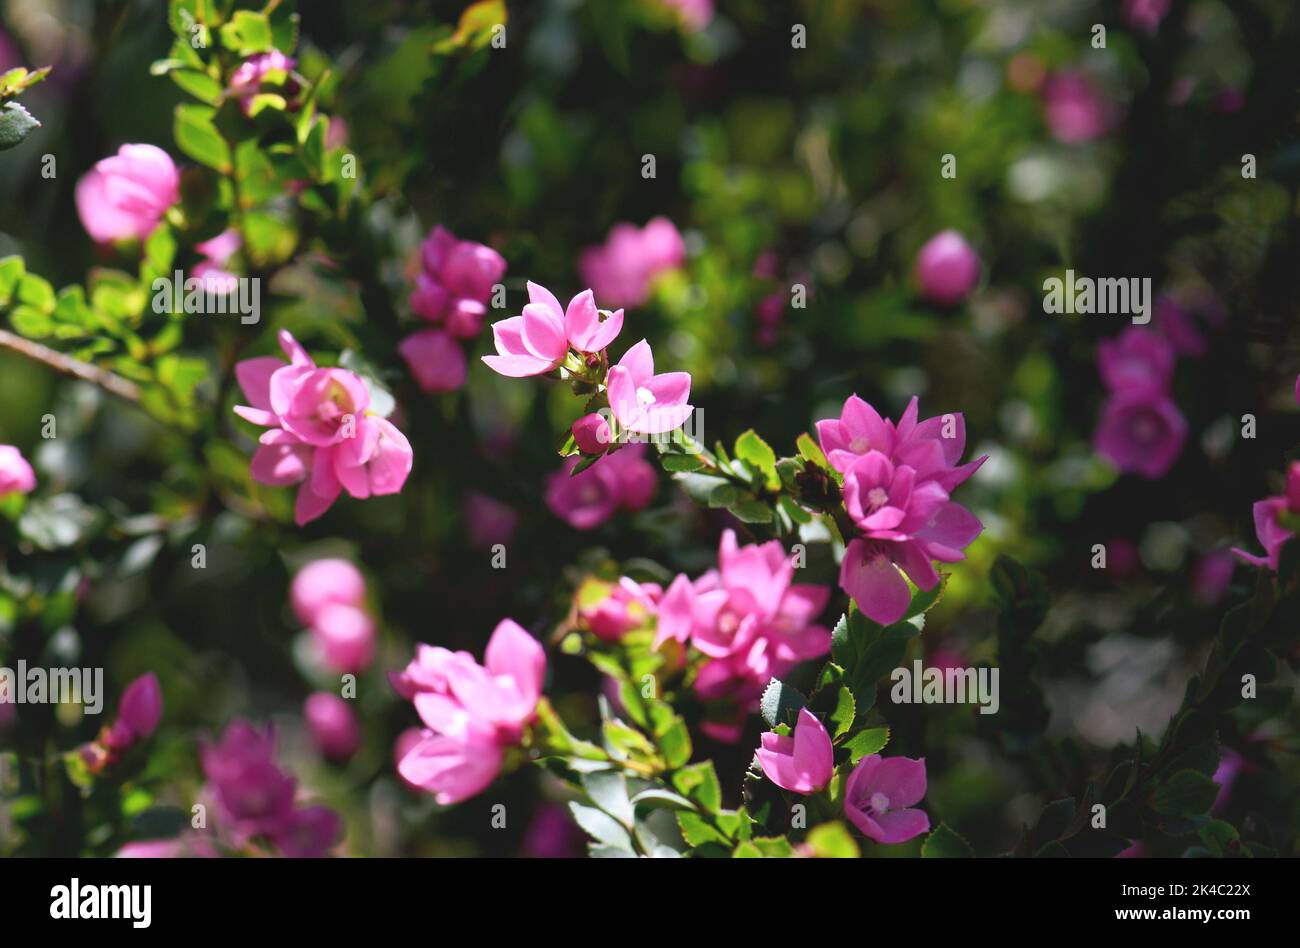 Gros plan des fleurs roses profondes de la famille des Rutaceae de la rose indigène australienne, Boronia serrulata, qui poussent dans la forêt sclérophylle sous le soleil Banque D'Images